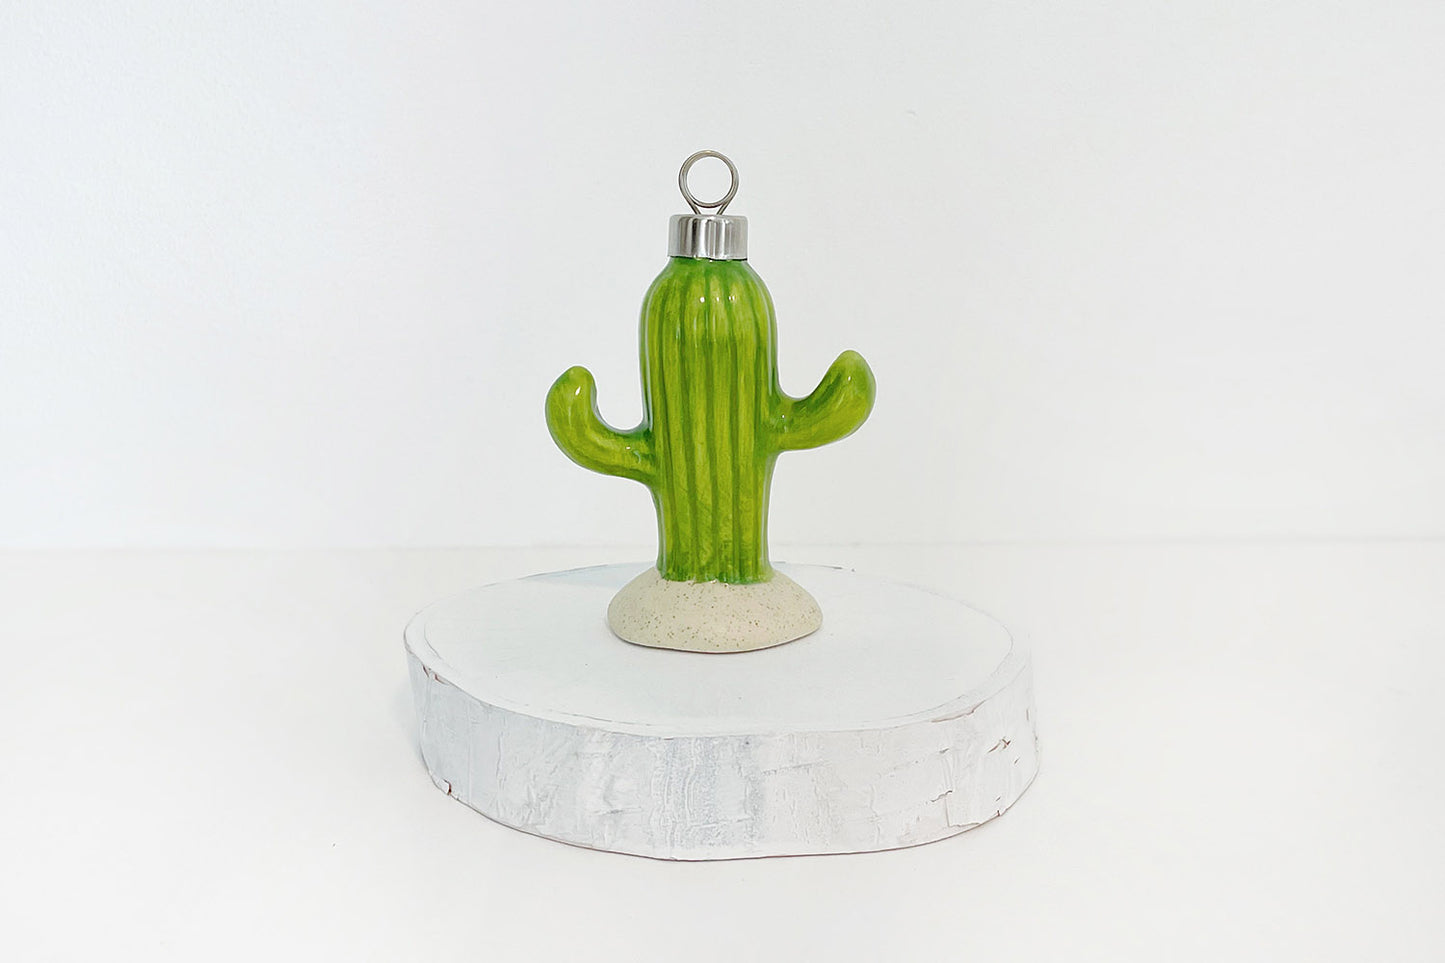 Mini Ceramic Cactus Ornaments